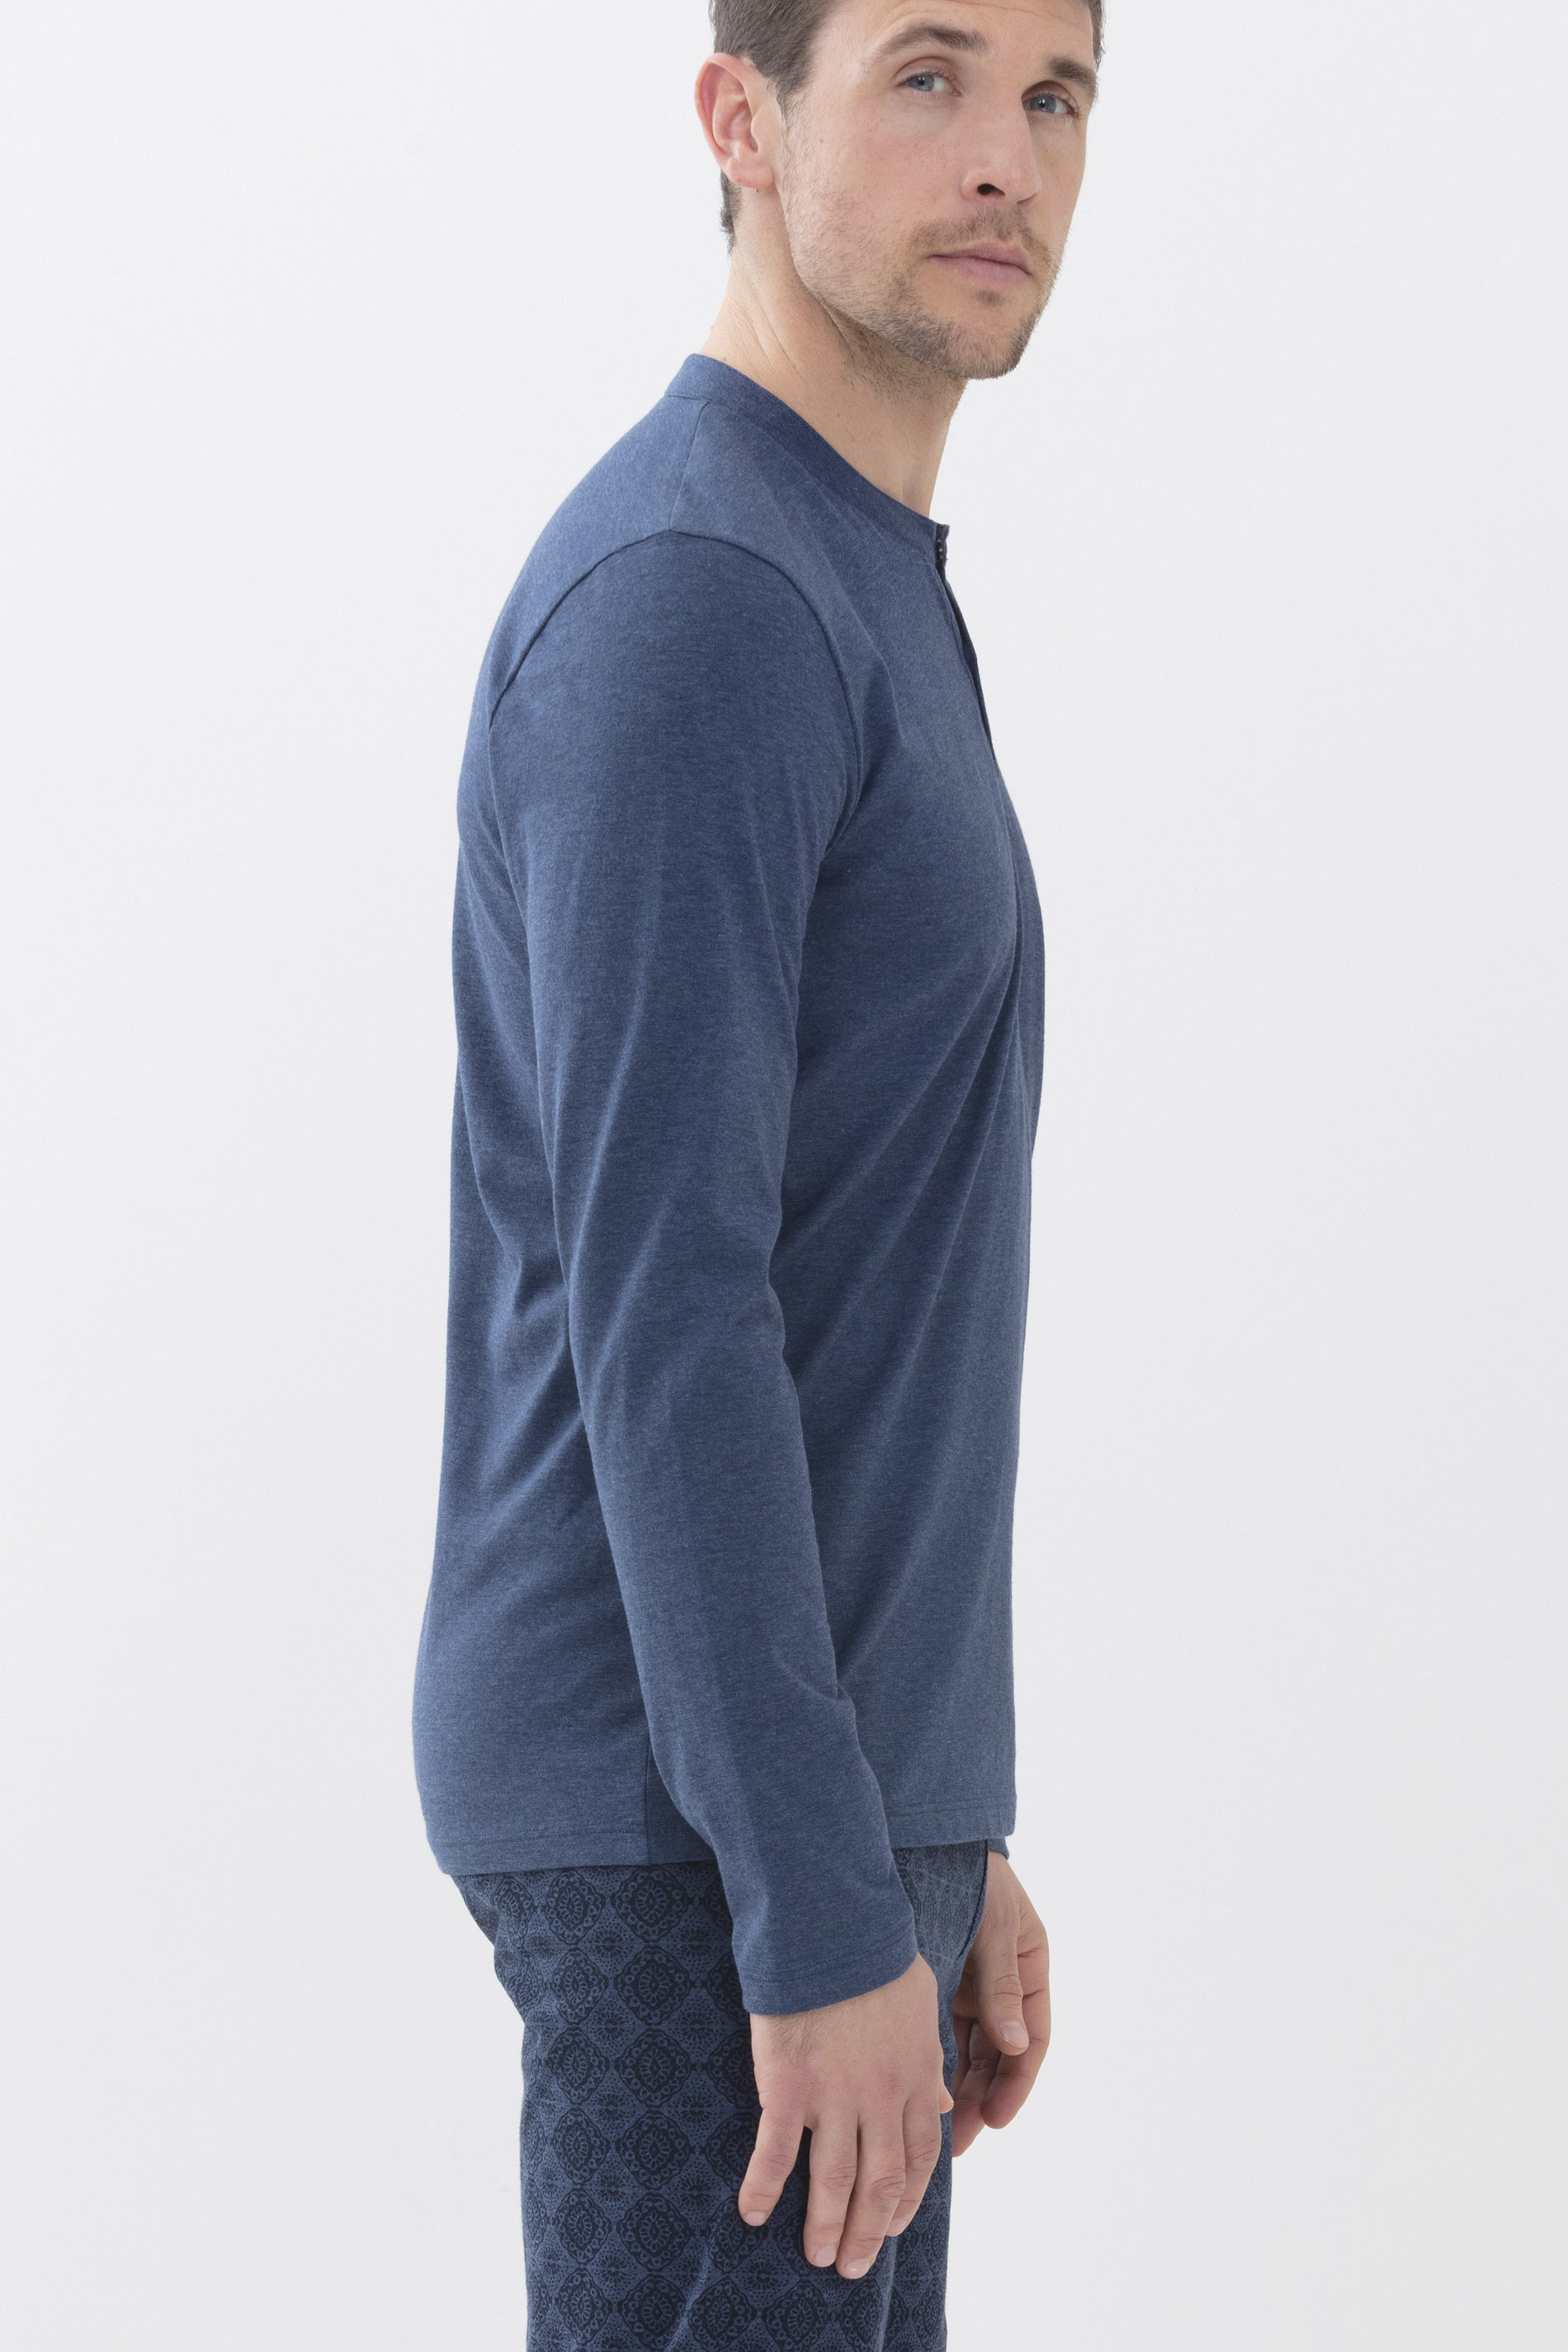 Langarm-Shirt Denim Blue Serie Ringwood Colour Detailansicht 02 | mey®